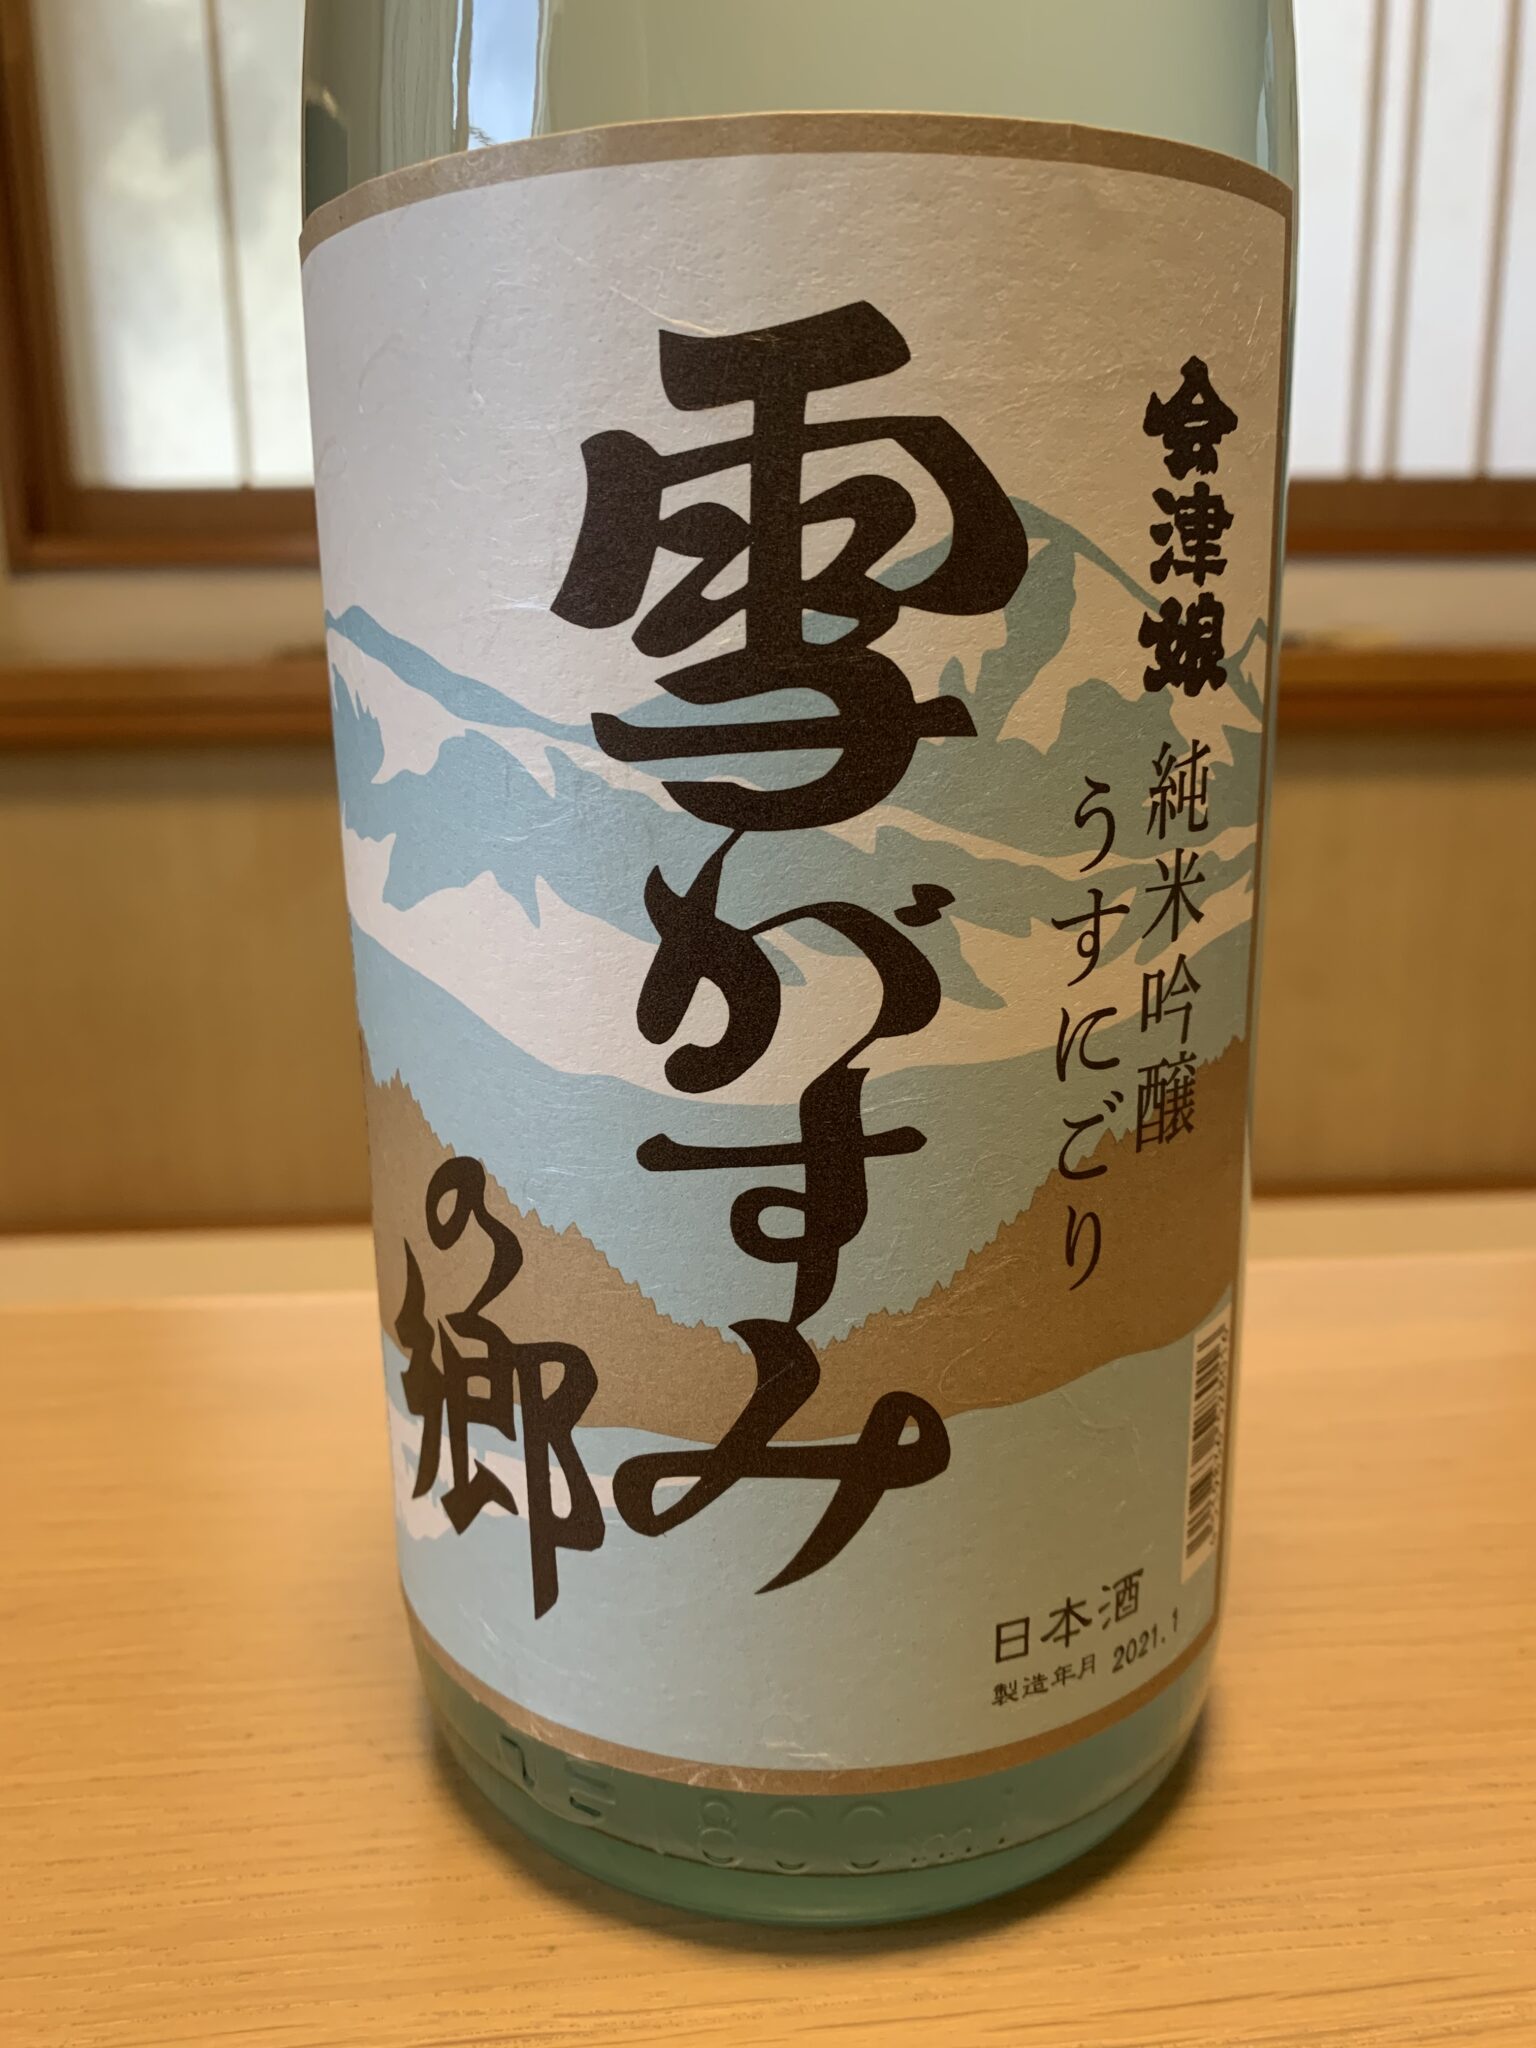 福島の日本酒『会津娘 雪がすみの郷』は微発泡で飲みやすい仕上り